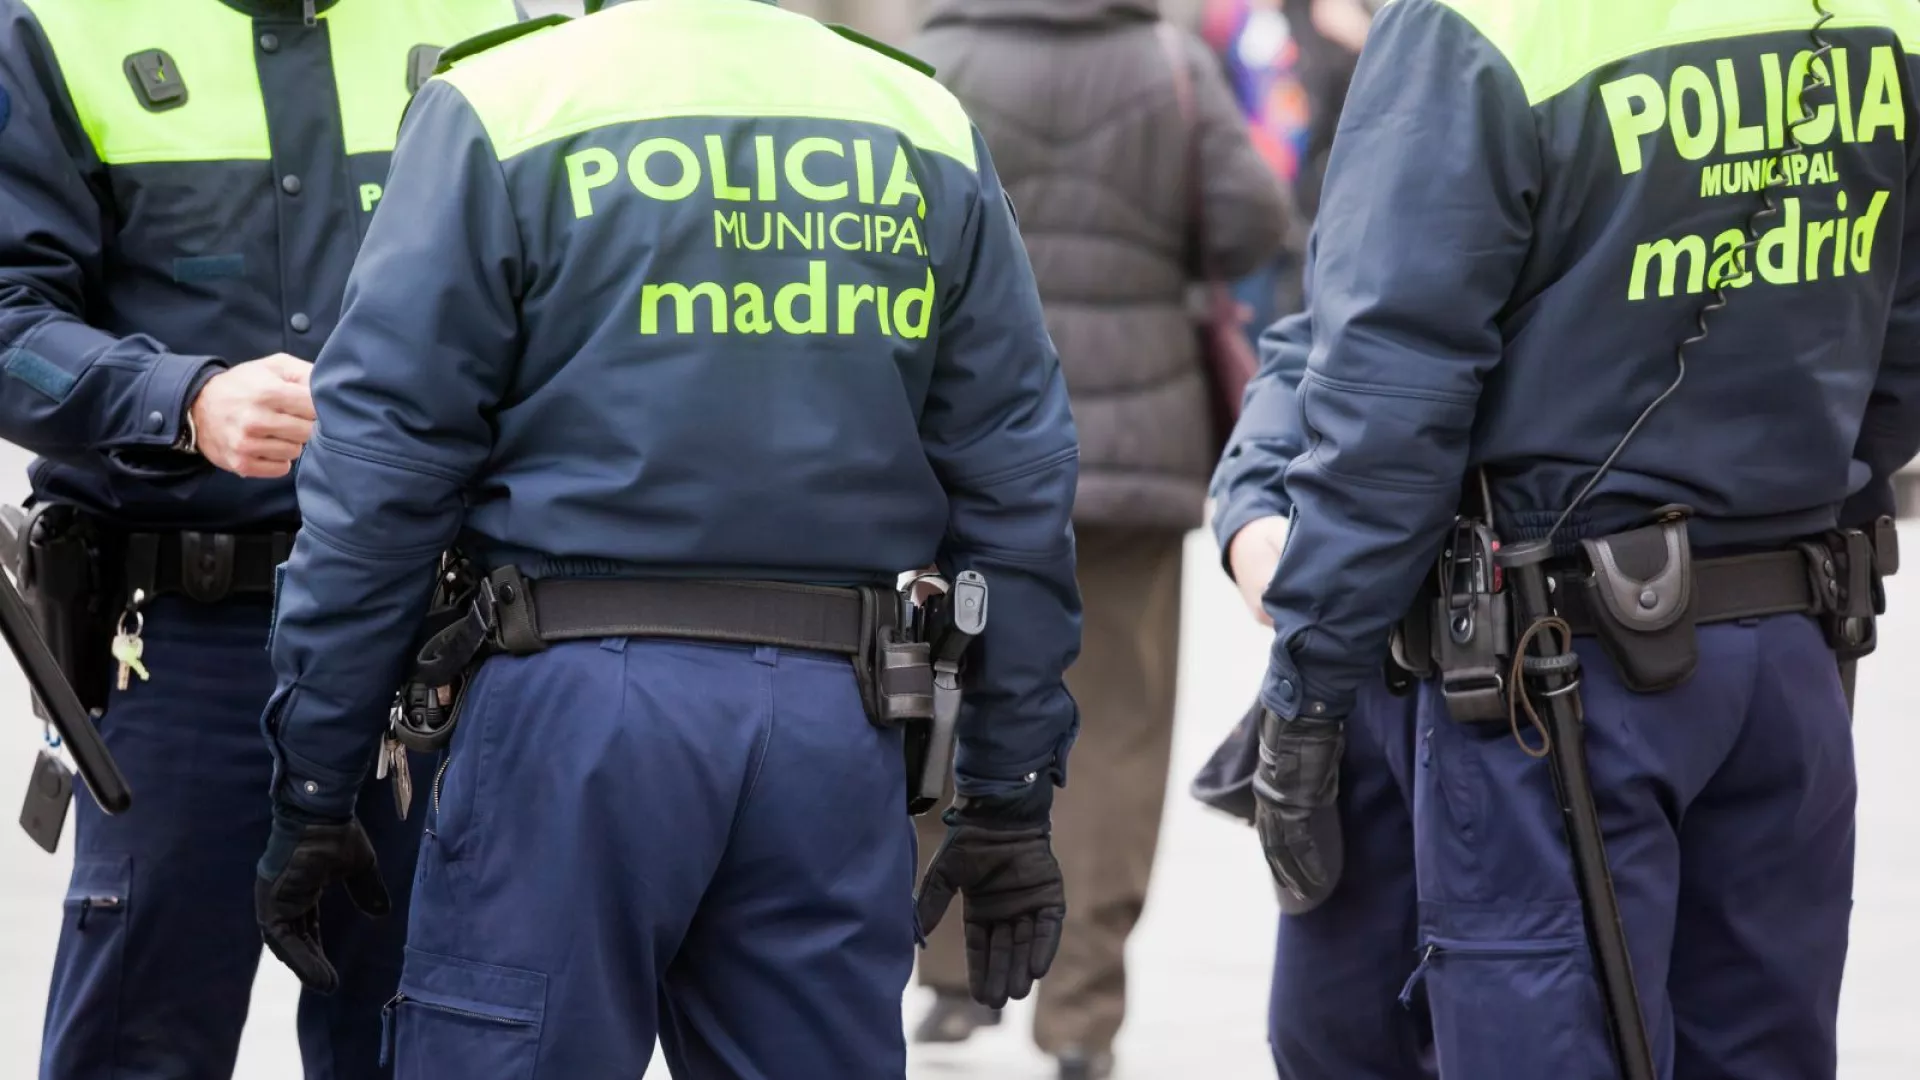 Kërcënimet për bombë në Spanjë anulojnë mësimin në disa shkolla ndërkombëtare